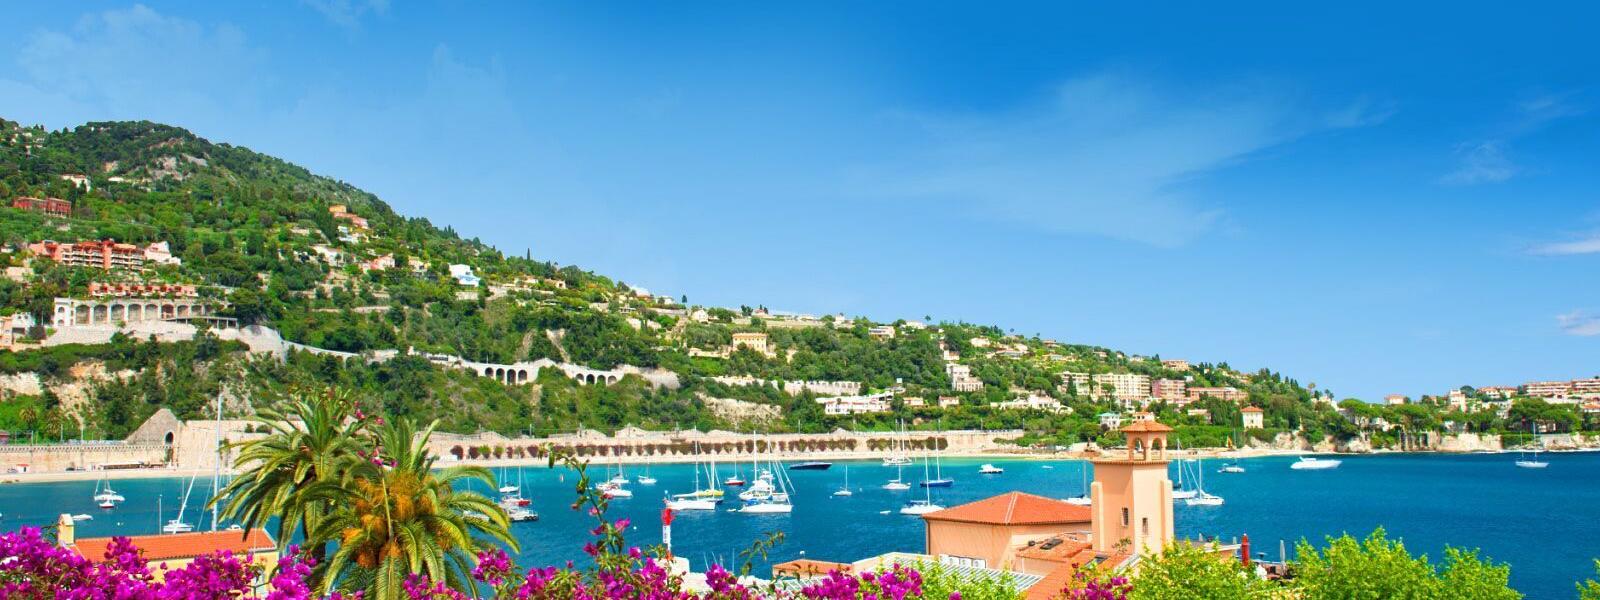 Luxus Ferienhäuser und Ferienwohnungen in Nizza - BELLEVUE Ferienhaus